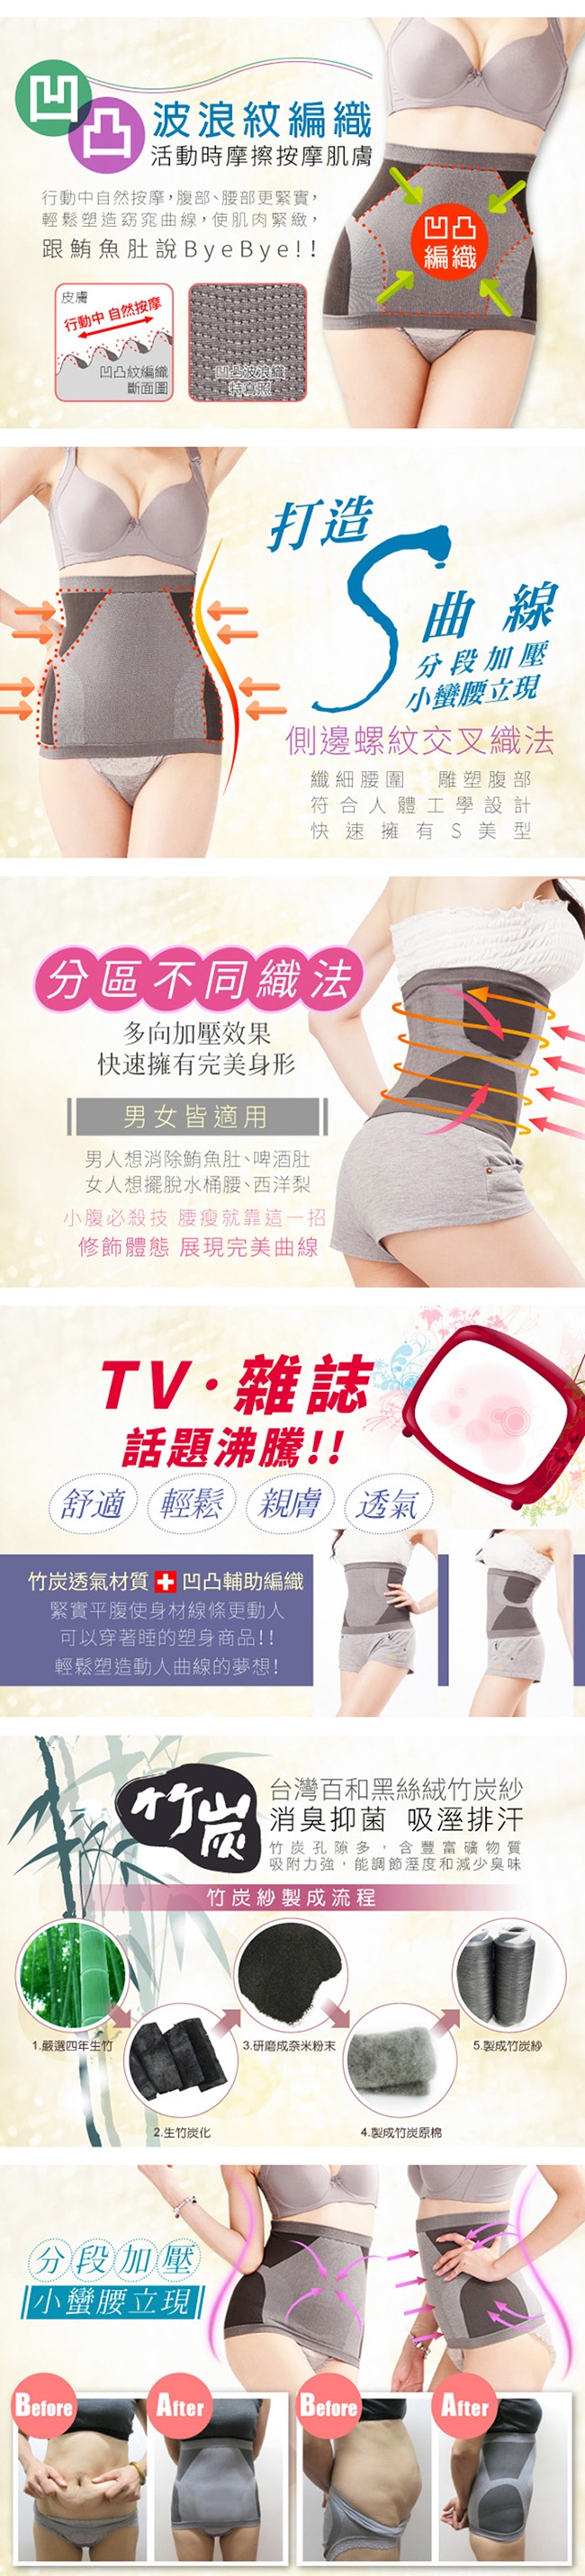 【Yi-sheng】台灣製美人曲線束腰片(超值6件組)